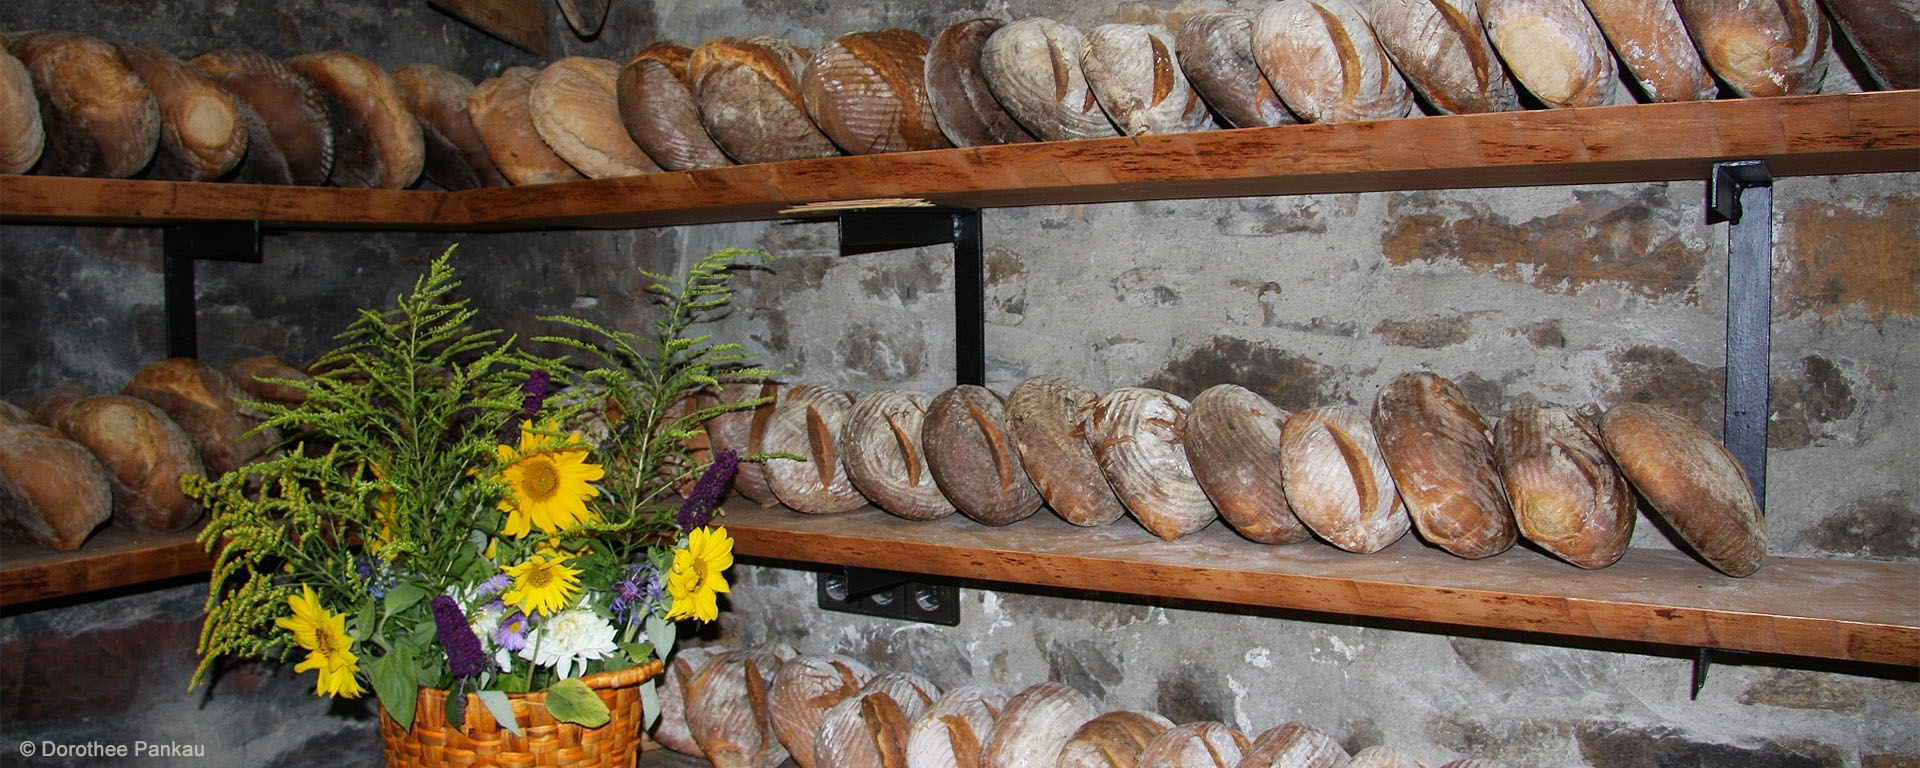 Frische Brote im Backhaus